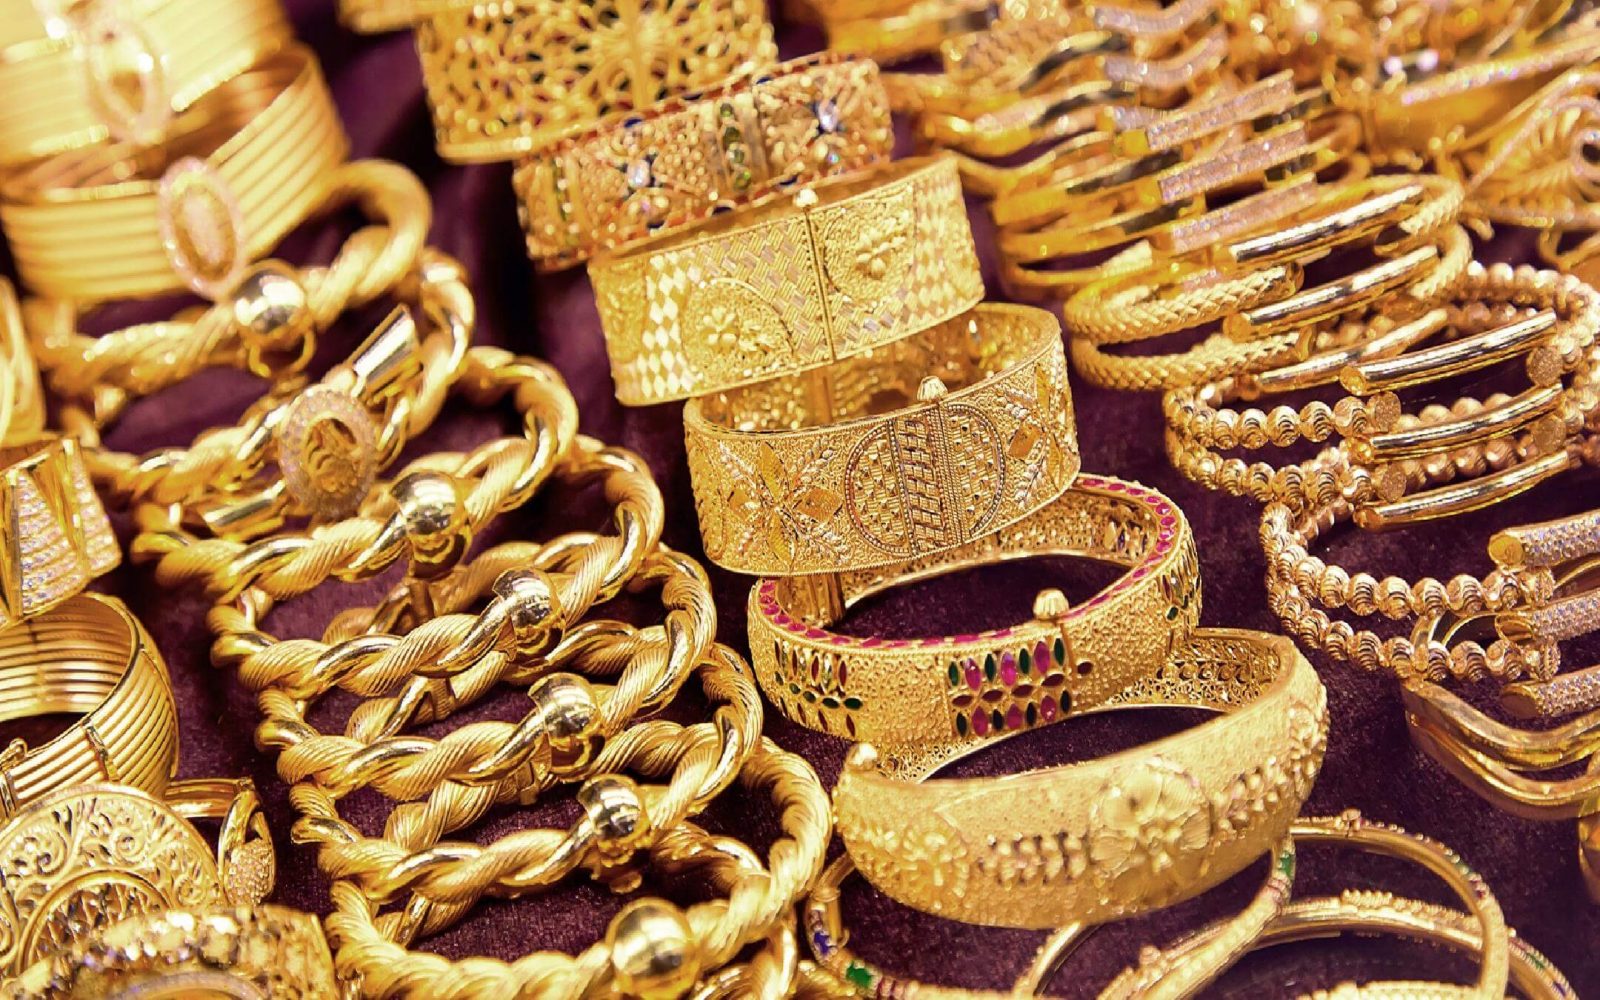 البوكس نيوز - هبوط أسعار الذهب في مصر اليوم الاثنين 27 فبراير 2023